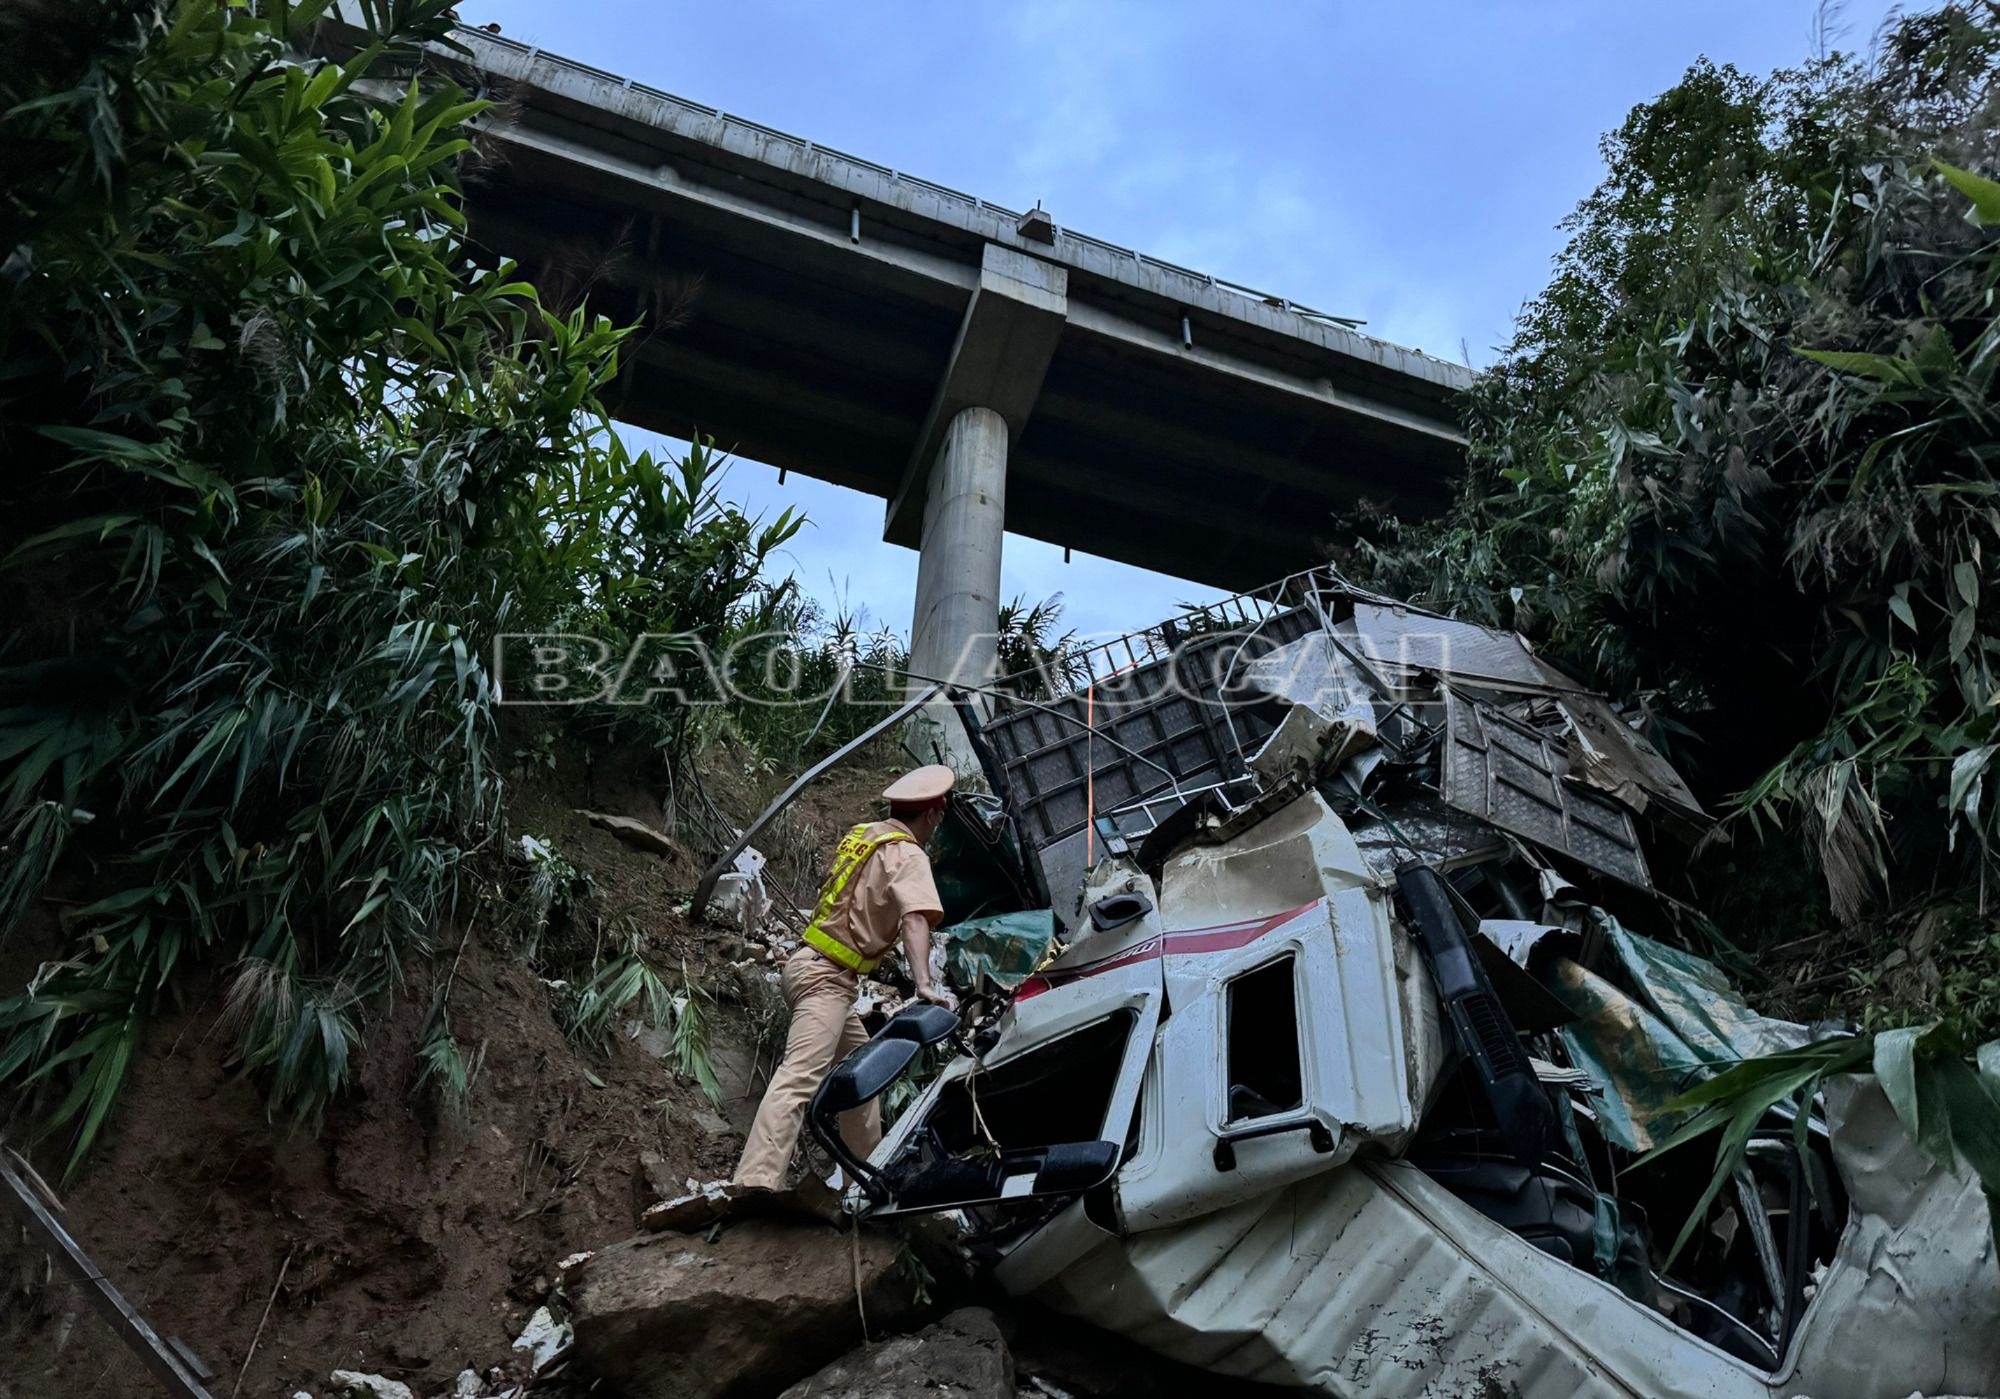 Xe tải lật xuống vực trên đường nối cao tốc Nội Bài - Lào Cai đi Sa Pa làm 3 người bị thương